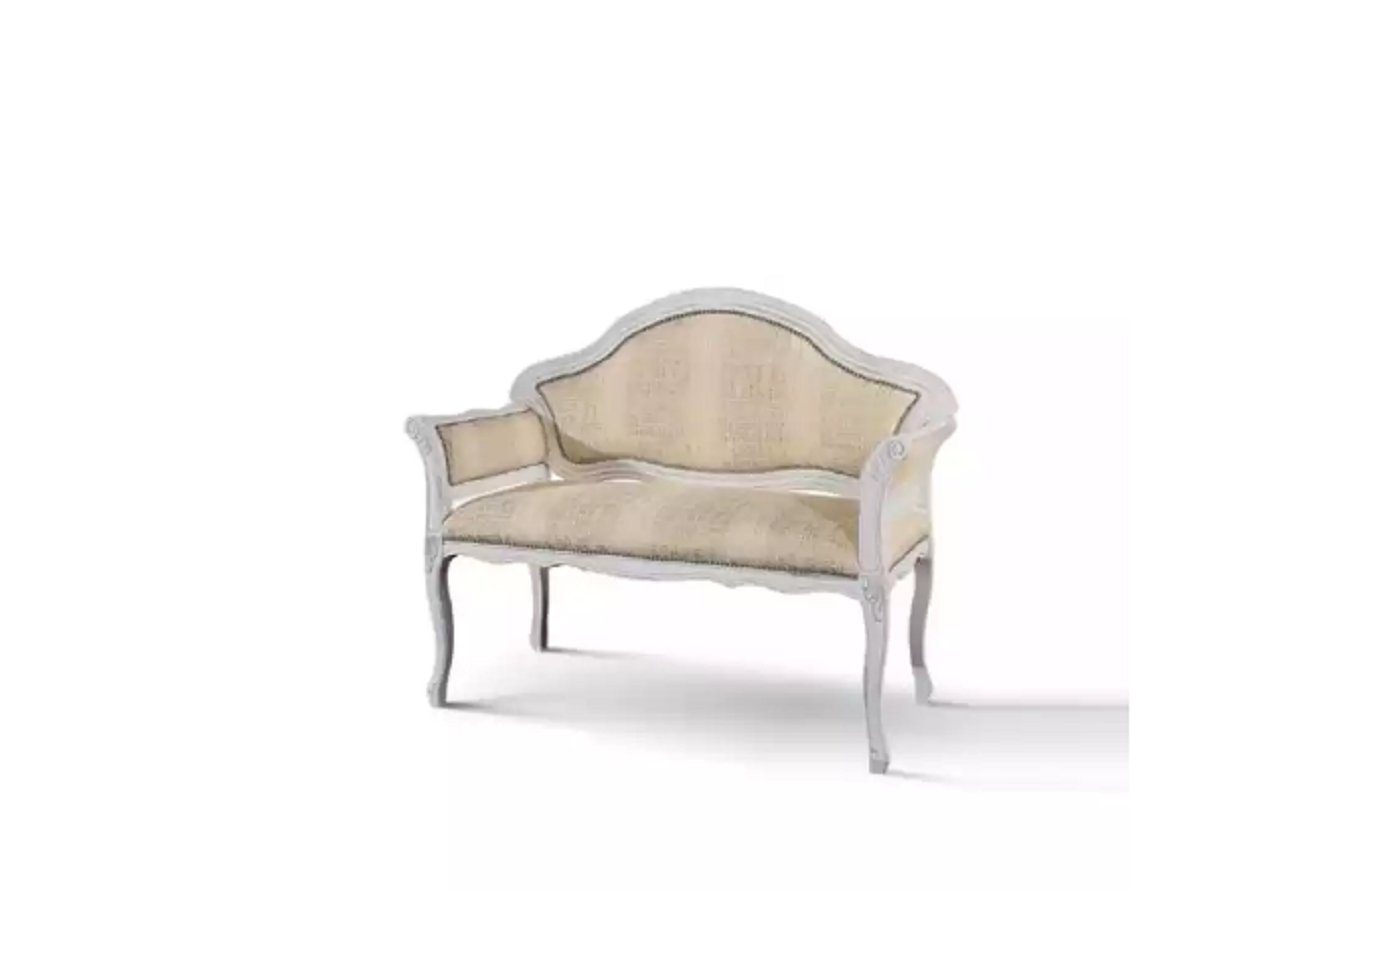 JVmoebel 2-Sitzer Beige 2 Sitzer Polster Sofa Textil Stoff Couchen Klassisch Neu, 1 Teile, Made in Italy